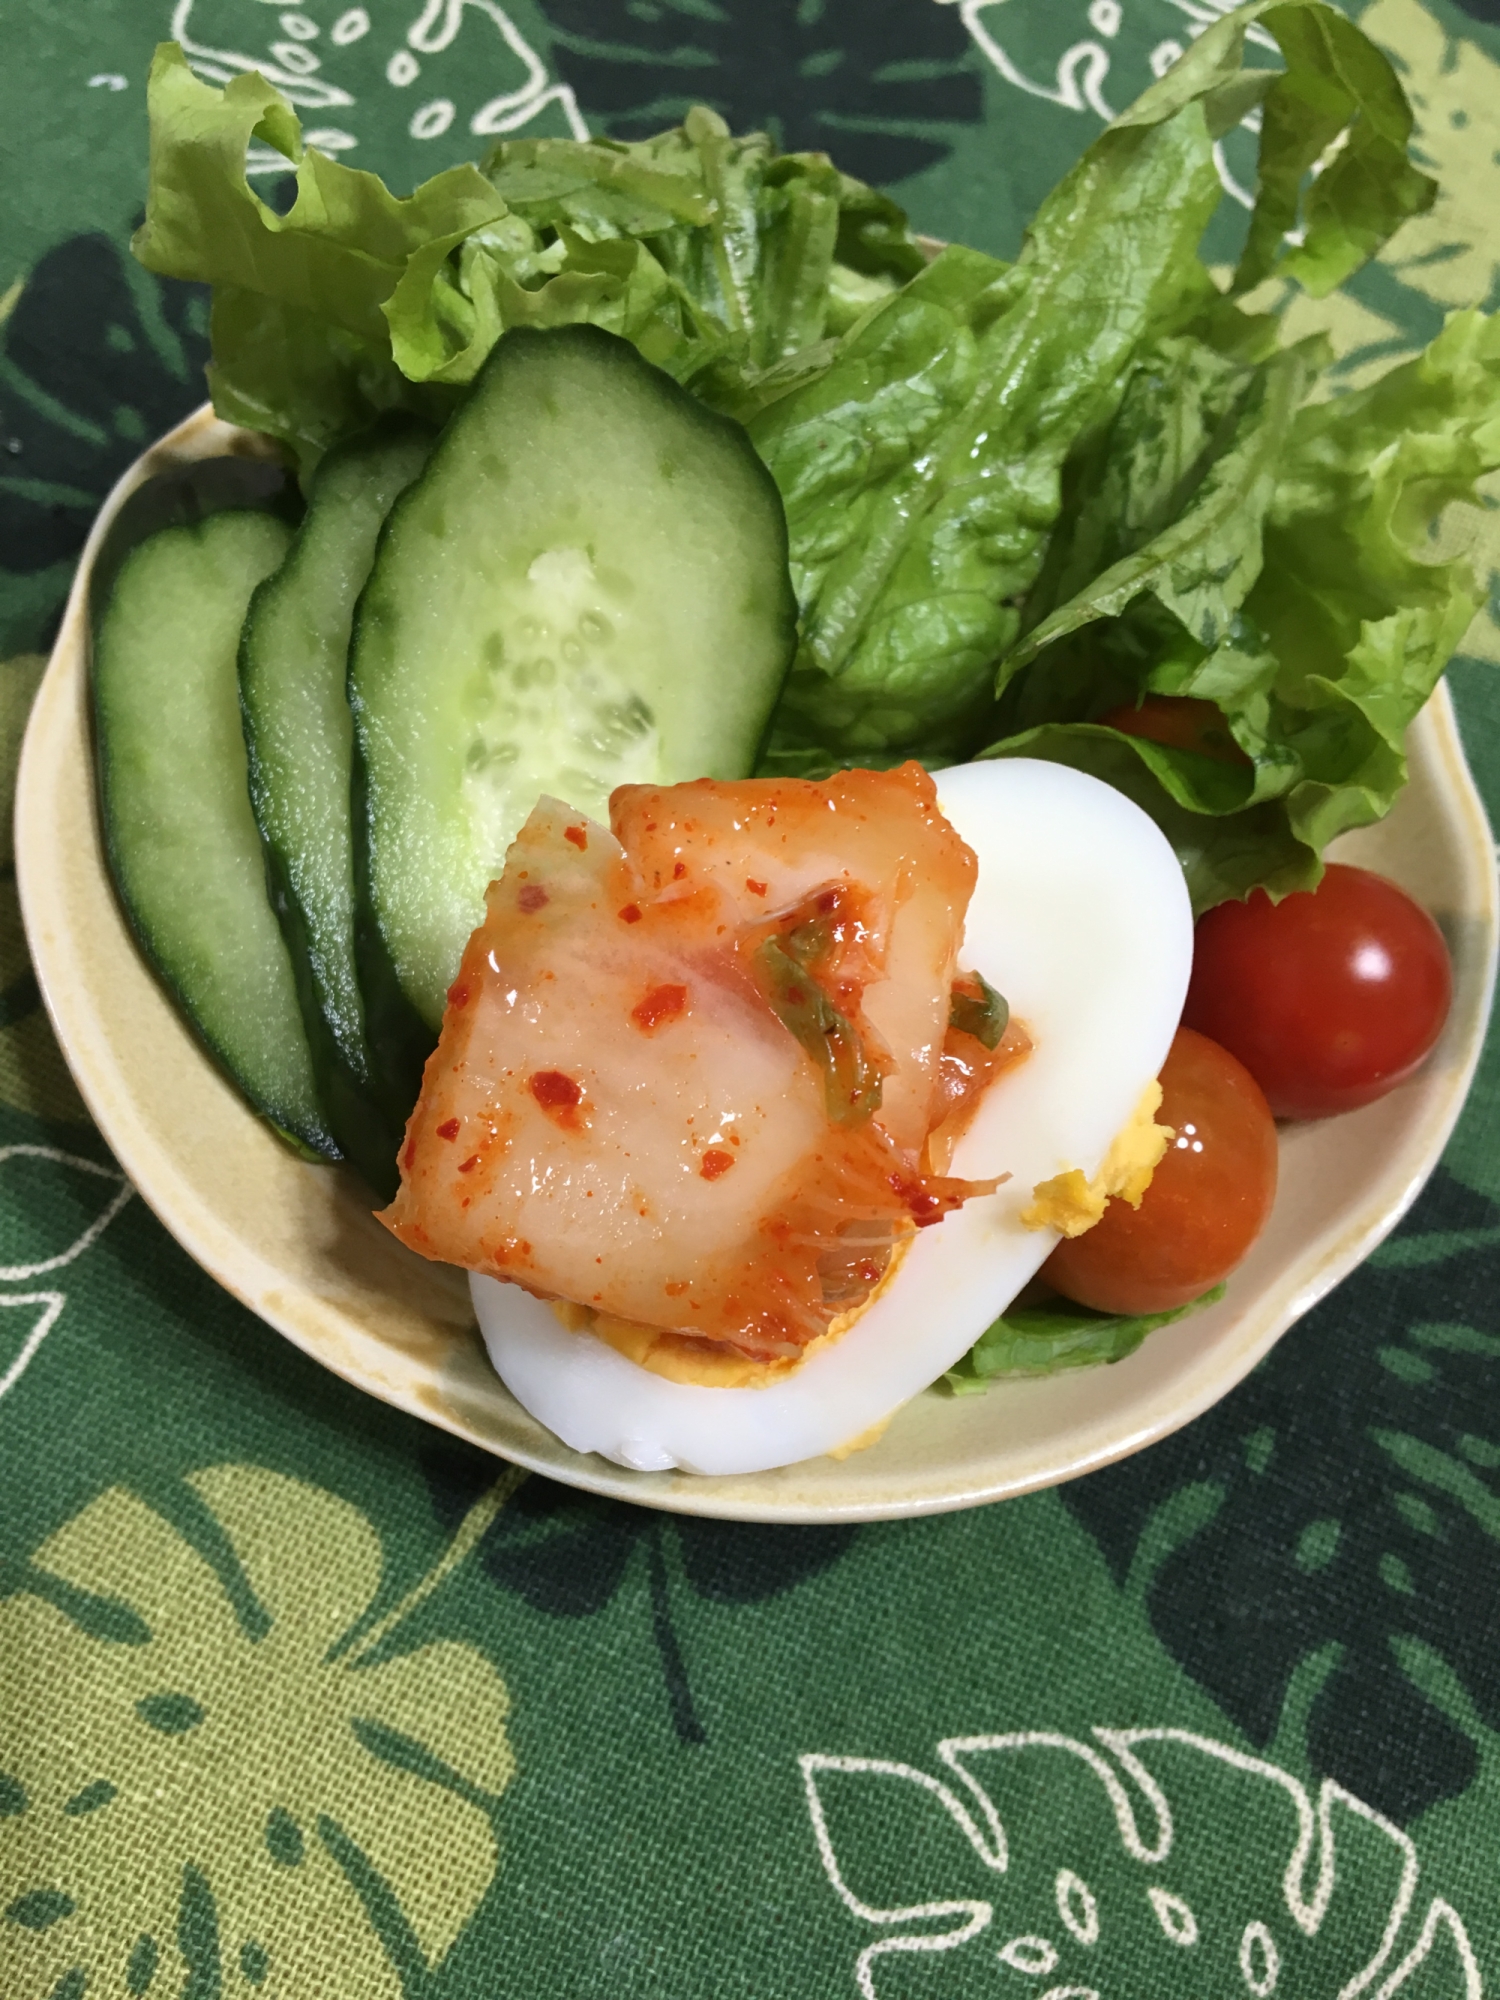 白菜キムチゆで卵のグリーンレタスサラダ(^^)